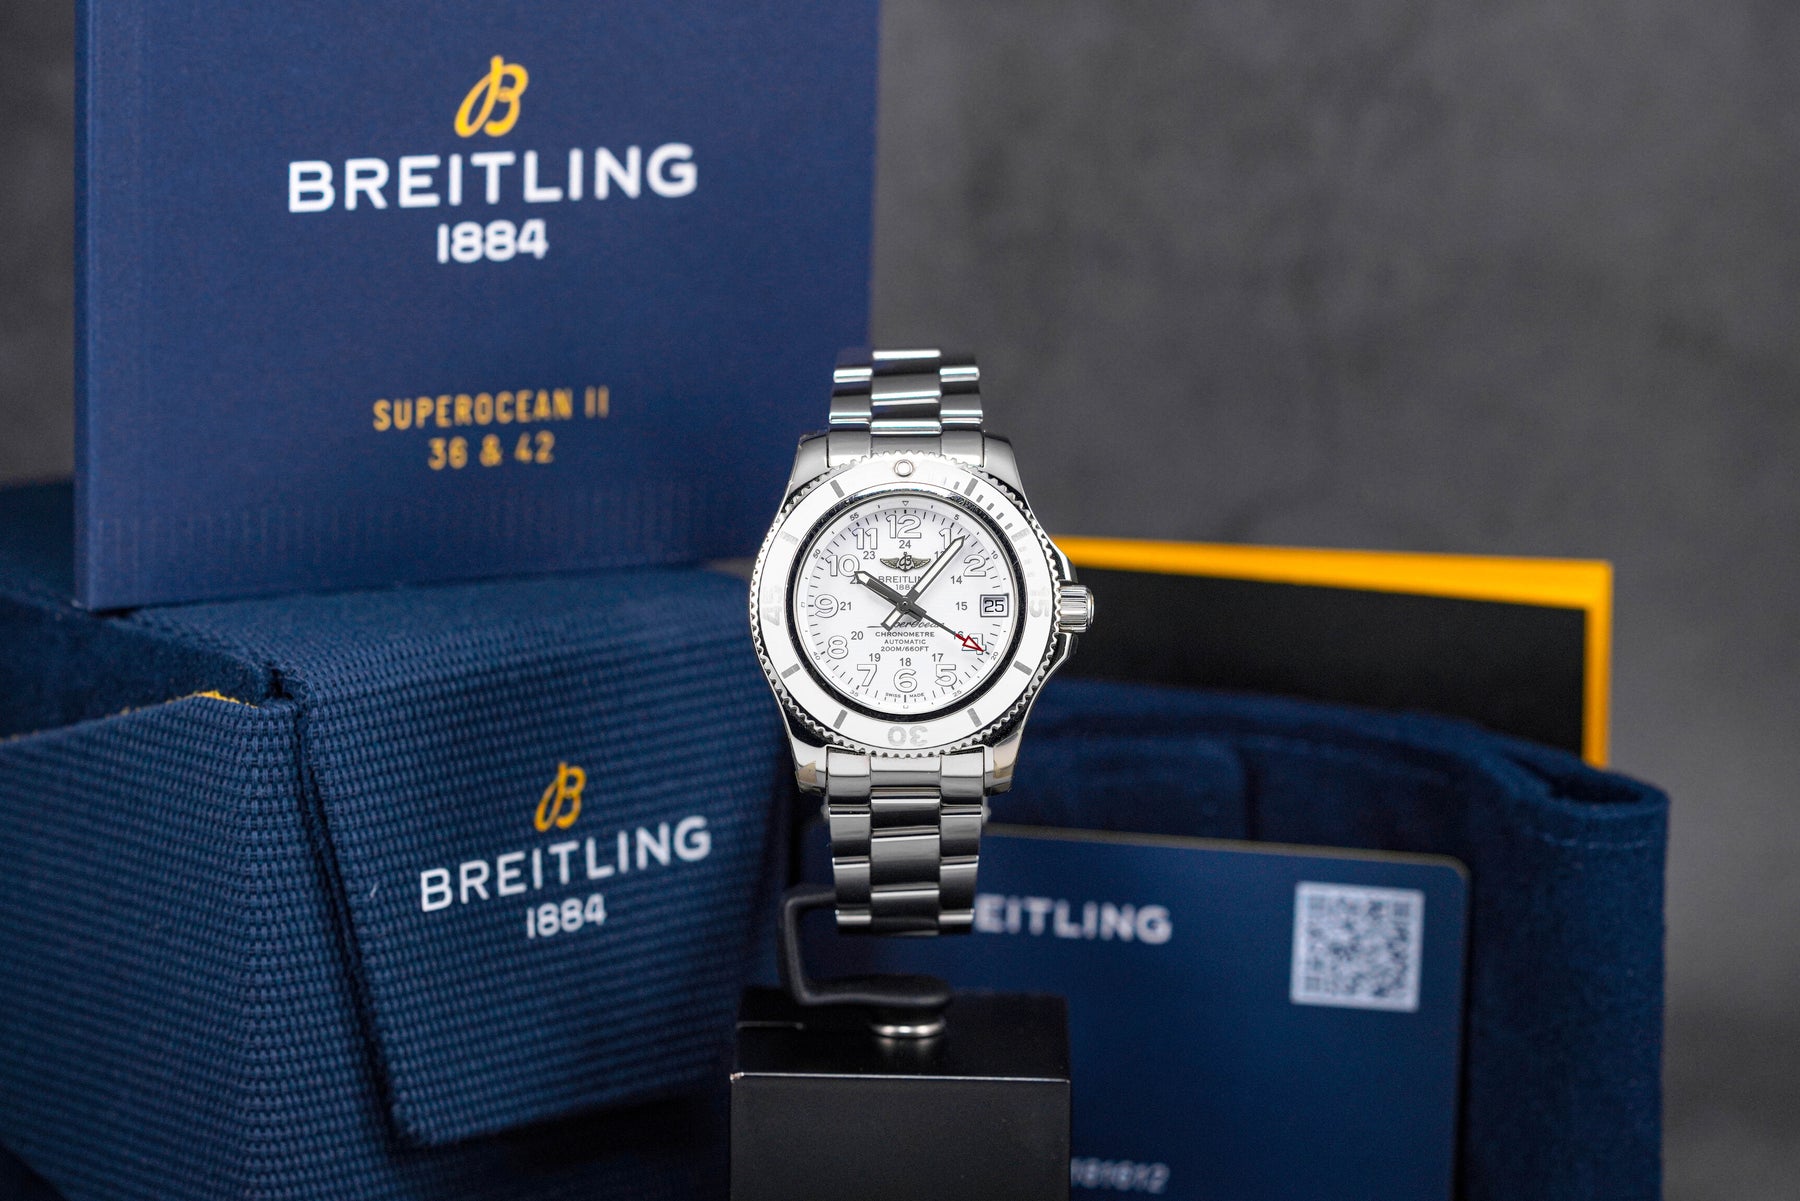 Breitling Superocean-II